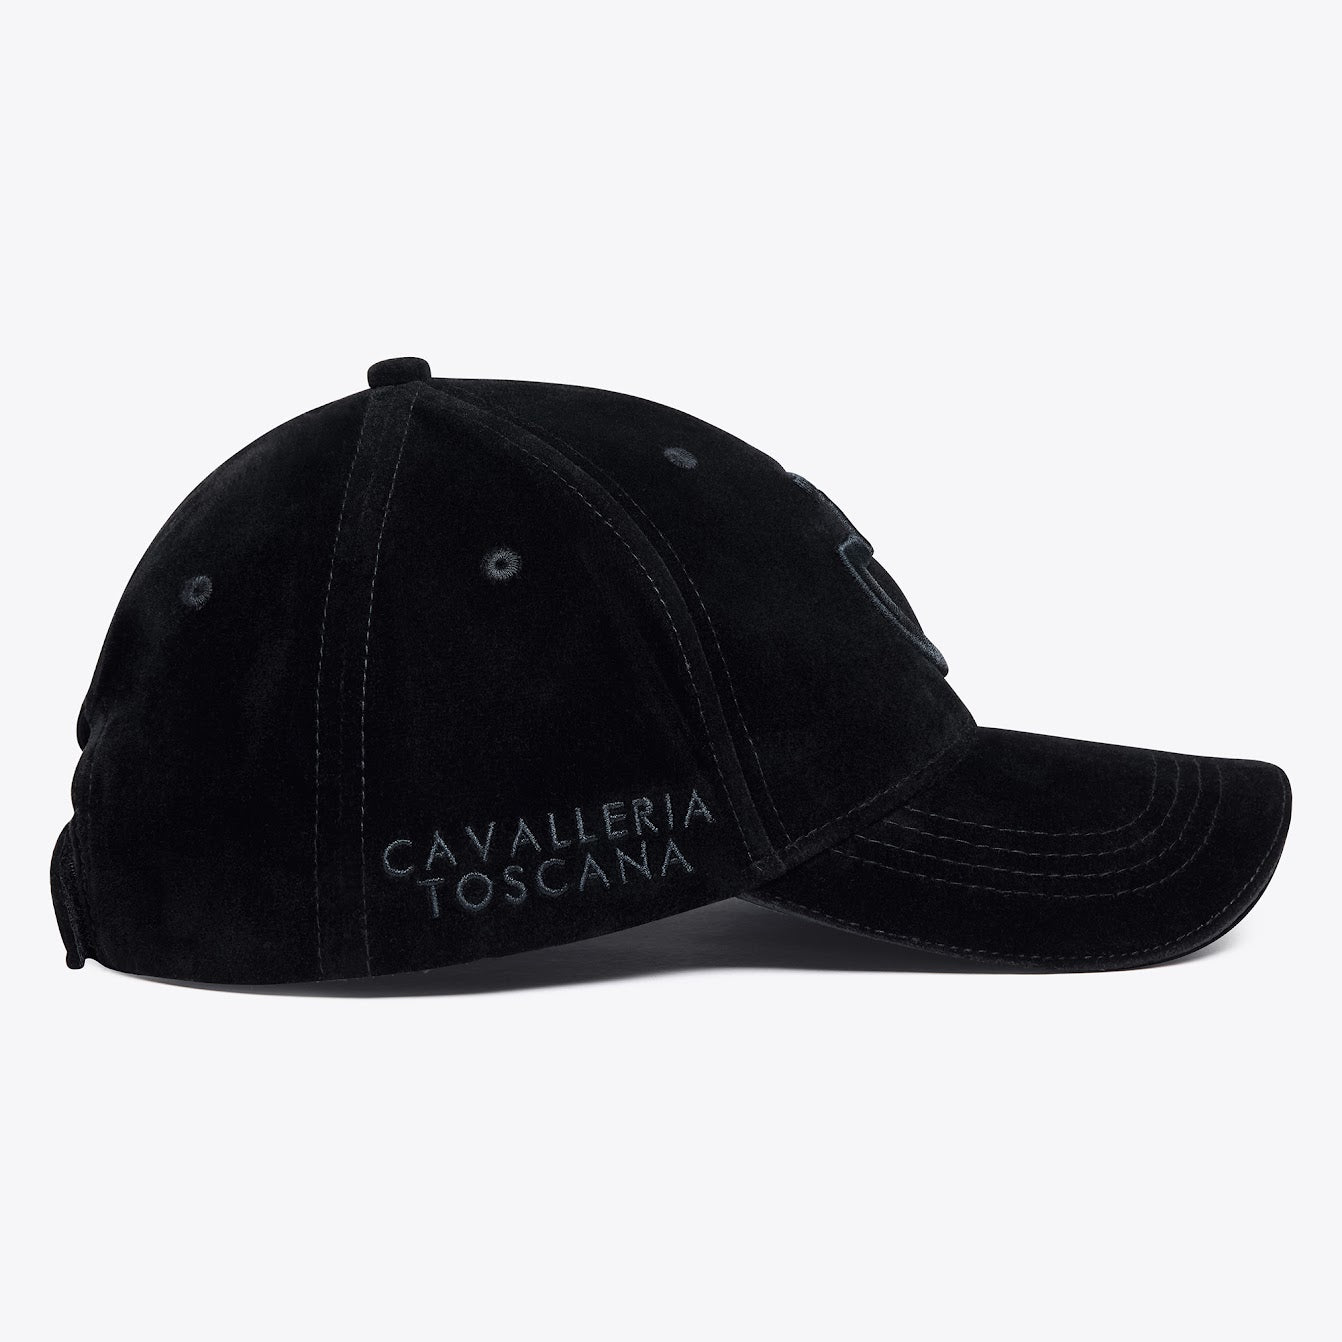 Cavalleria Toscana Black Velvet Cap